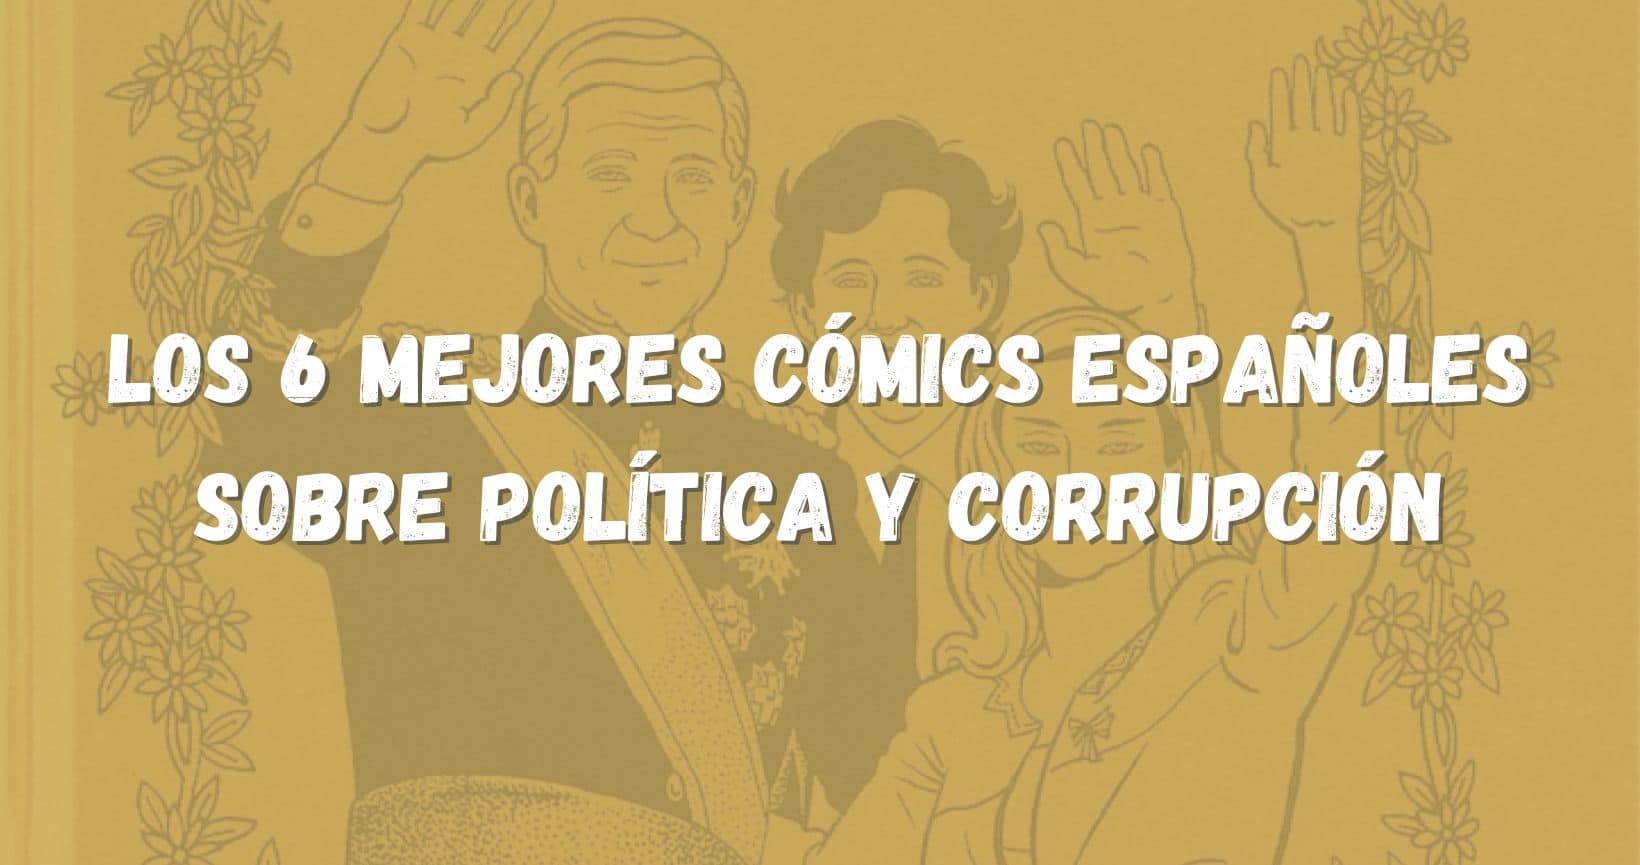 Los 6 mejores cómics españoles sobre política y corrupción